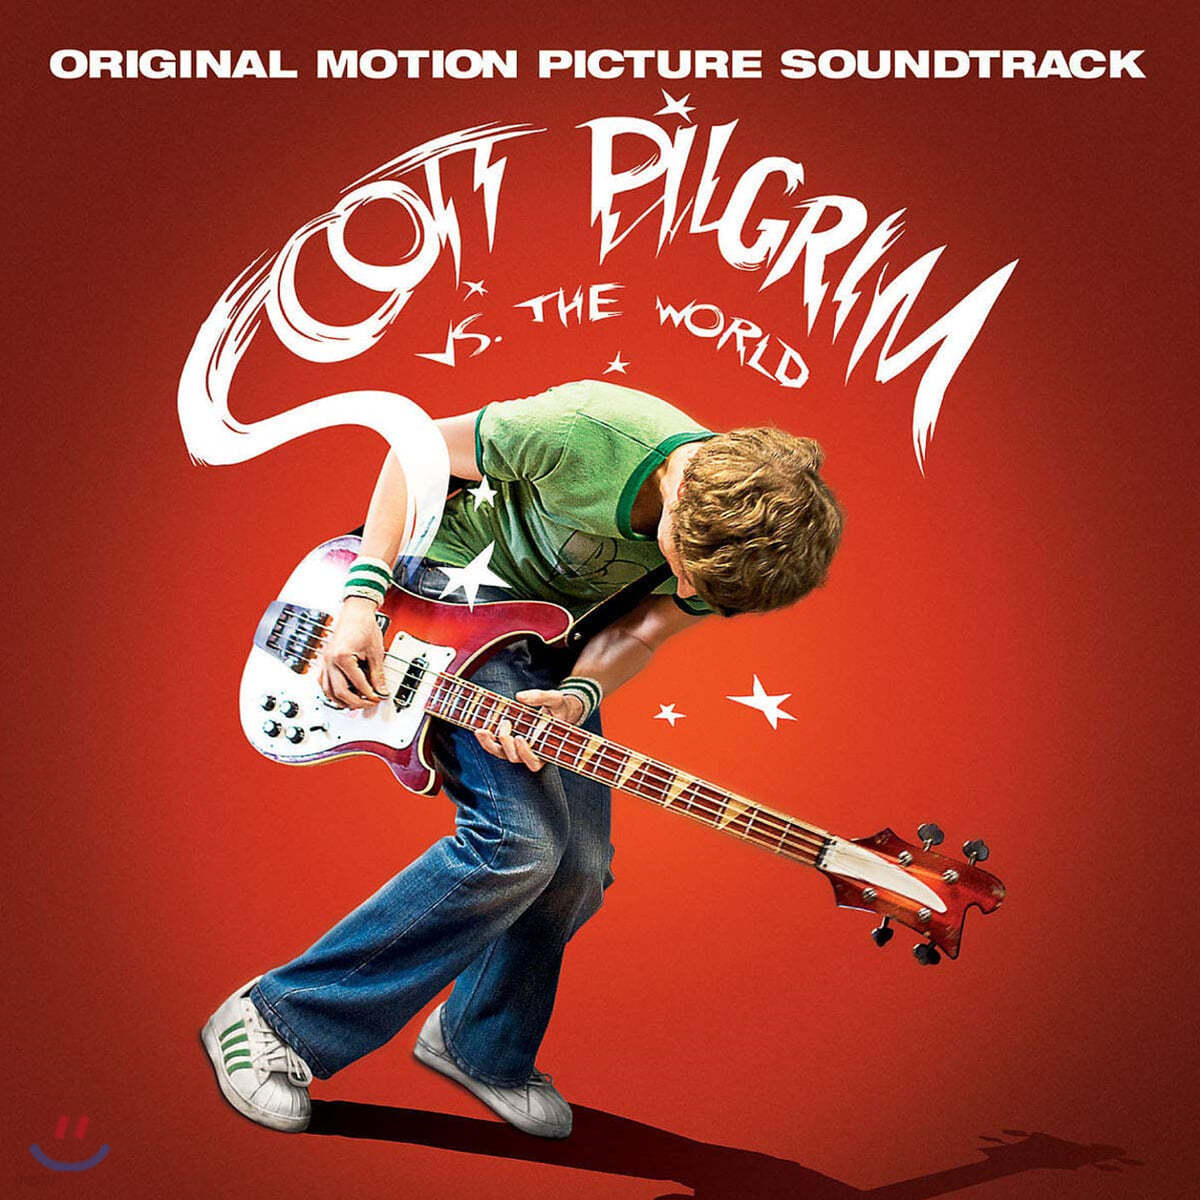 스콧 필그림 VS. 더 월드 영화음악 (Scott Pilgrim VS. The World OST)